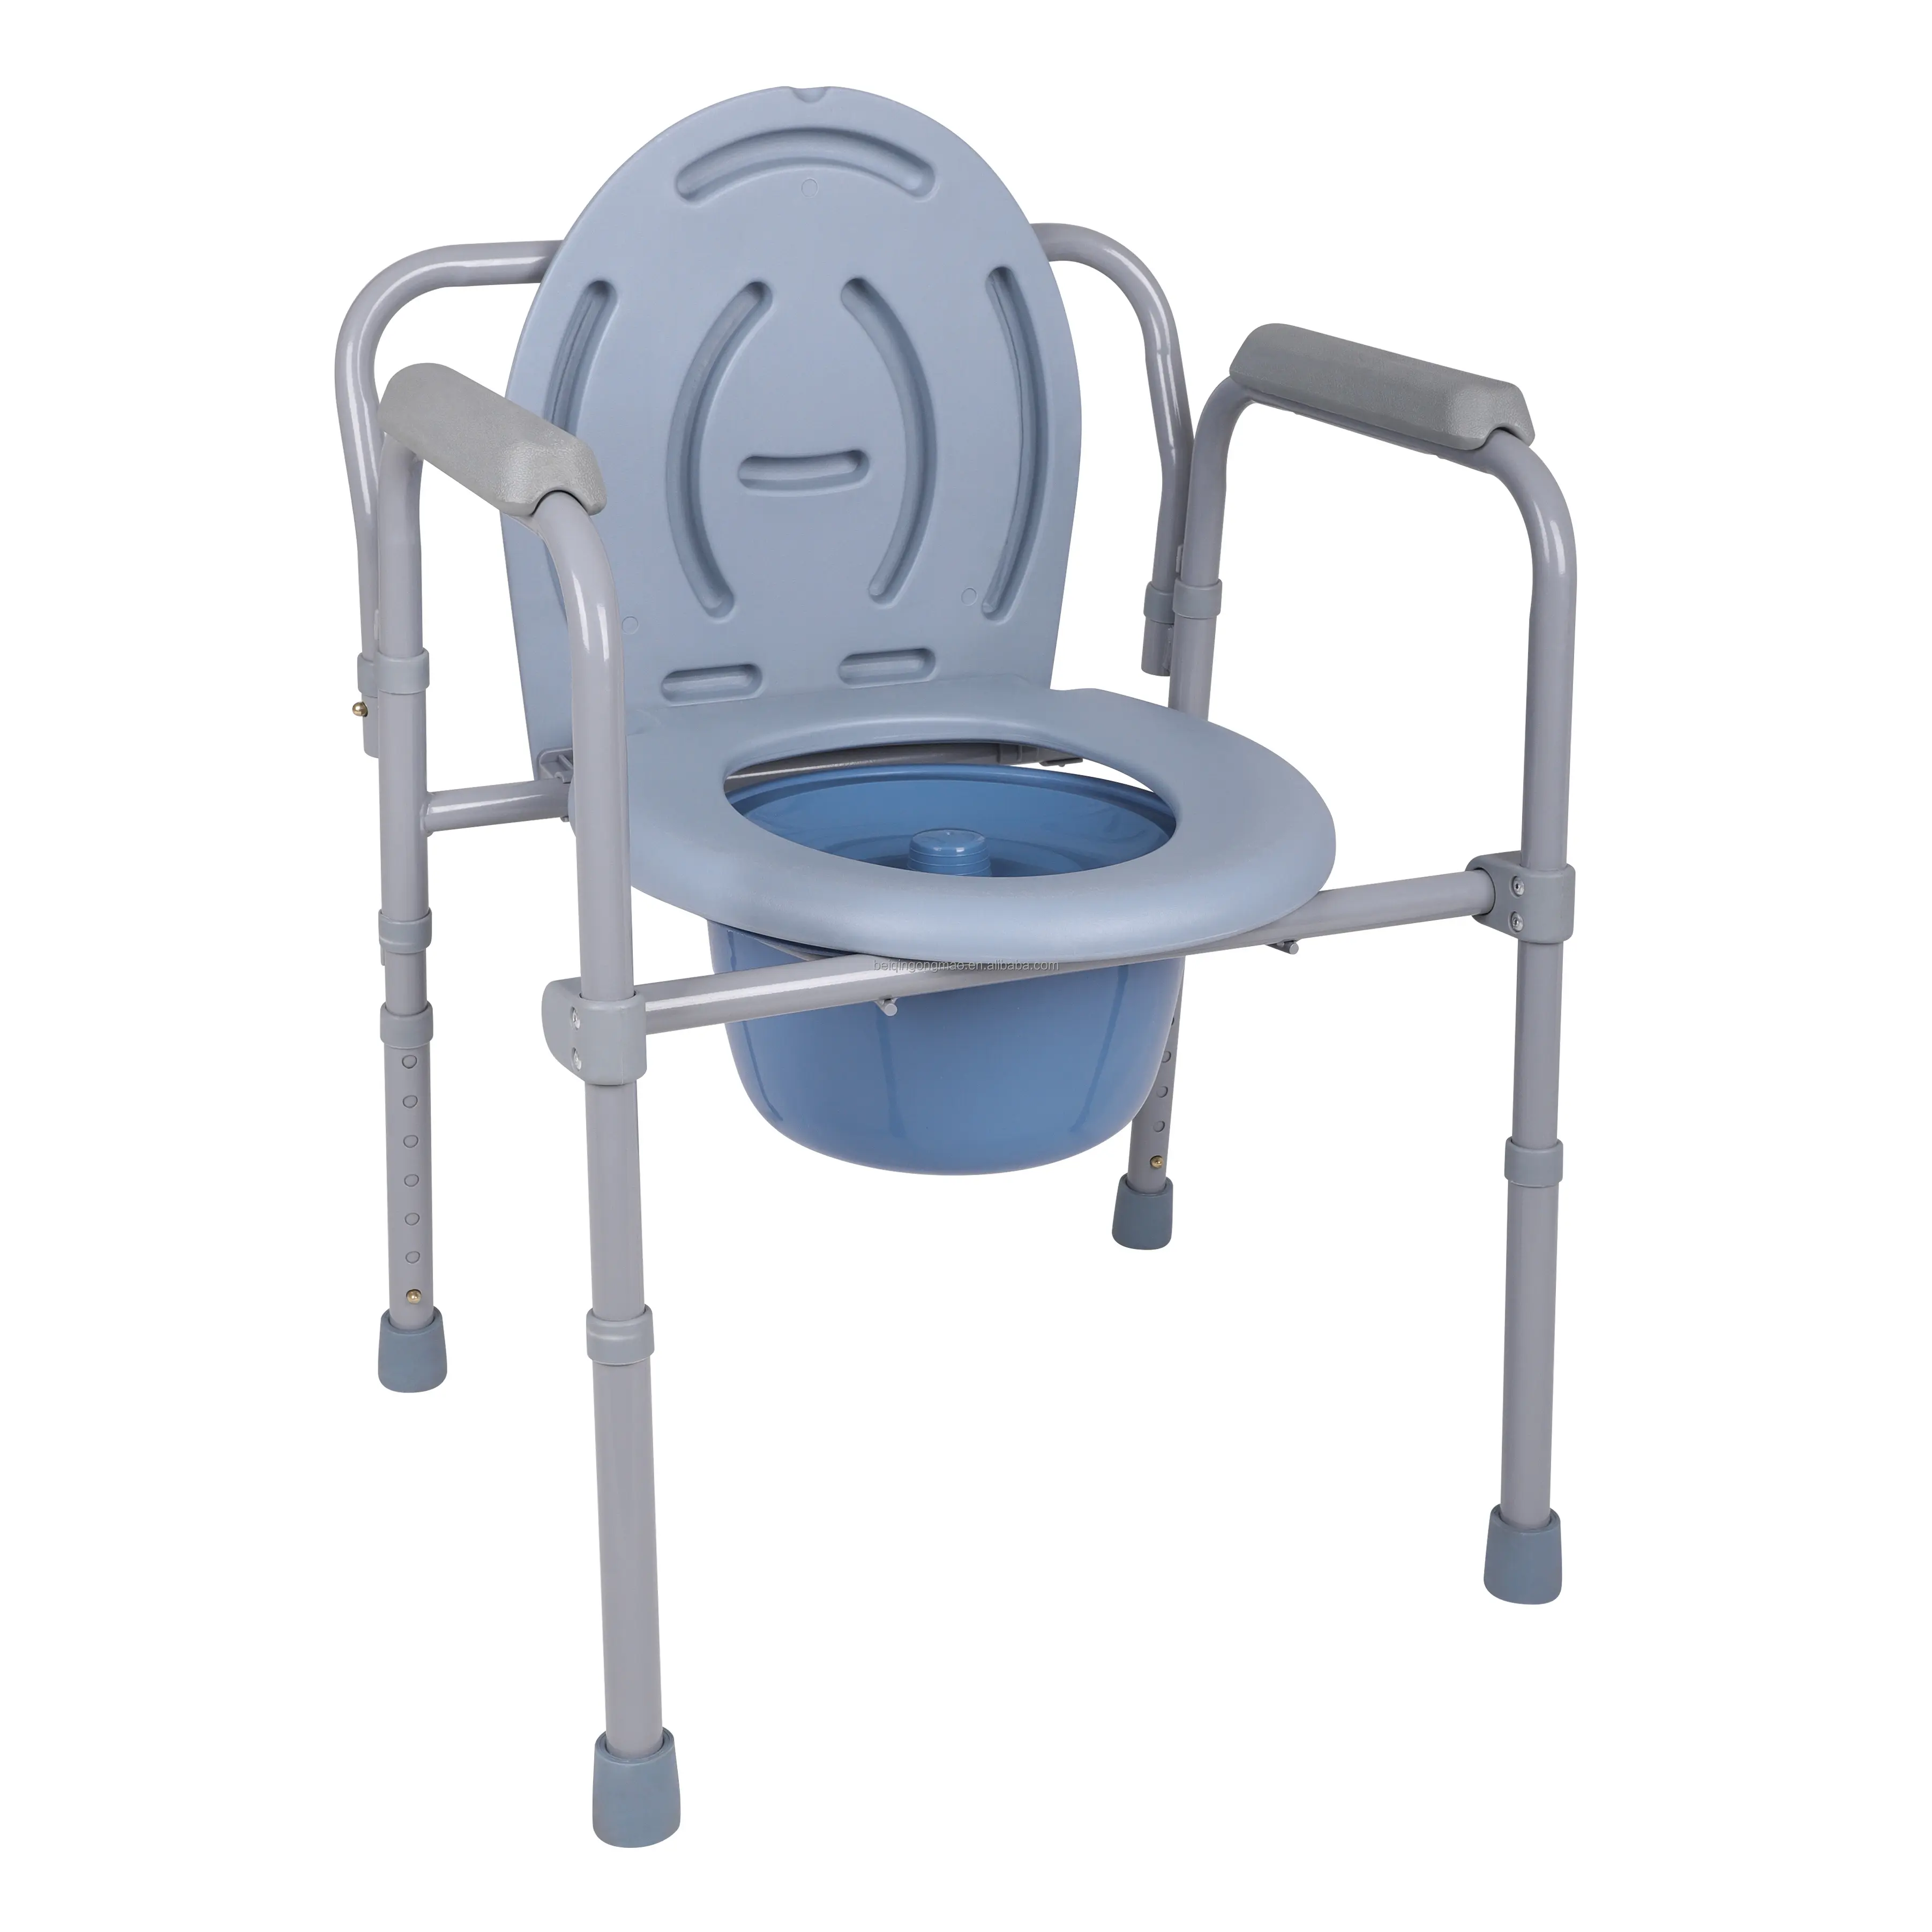 Sıcak satış banyo güvenlik ekipmanları katlanır mode din sandalye yaşlı için kapak ile